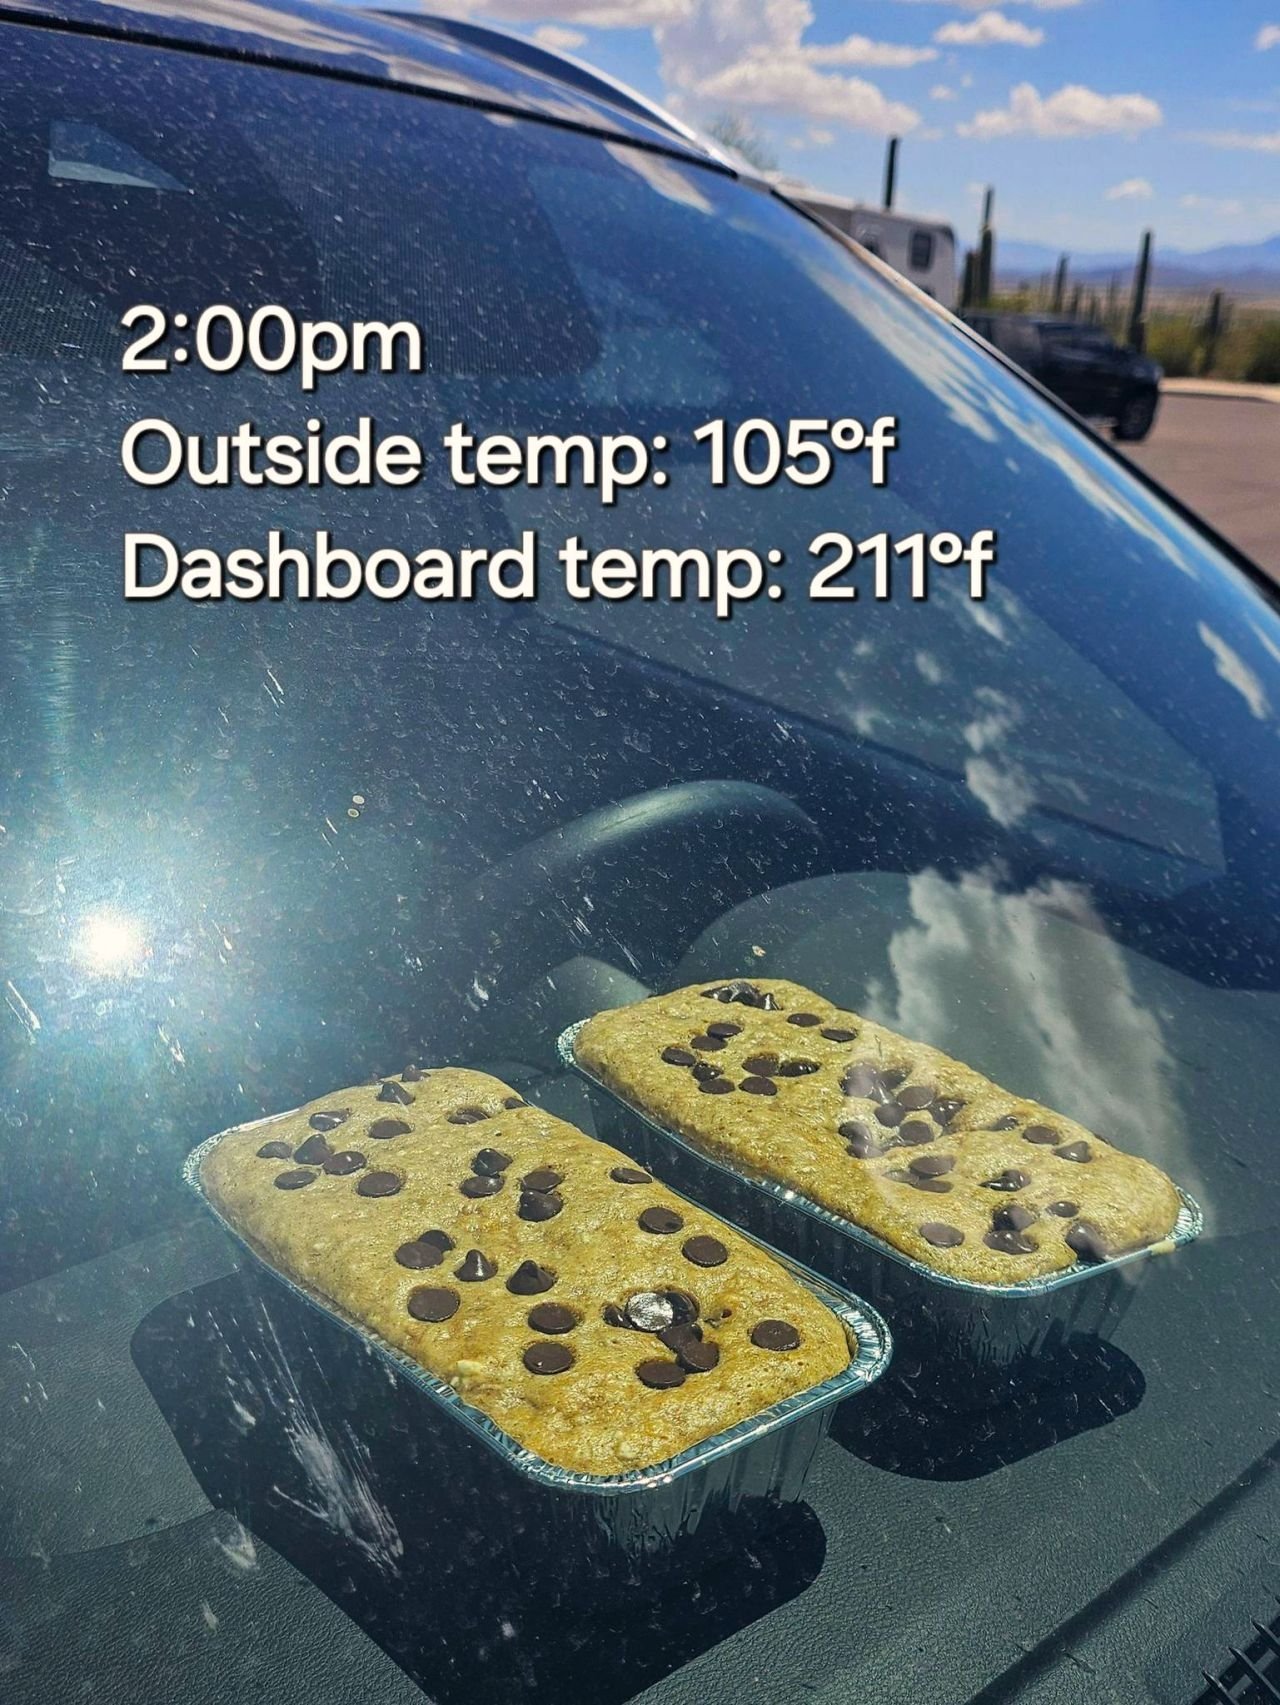 美國網友實測將生麵團放置「車上 4 小時」會如何？竟熱到成功烤出金黃麵包！